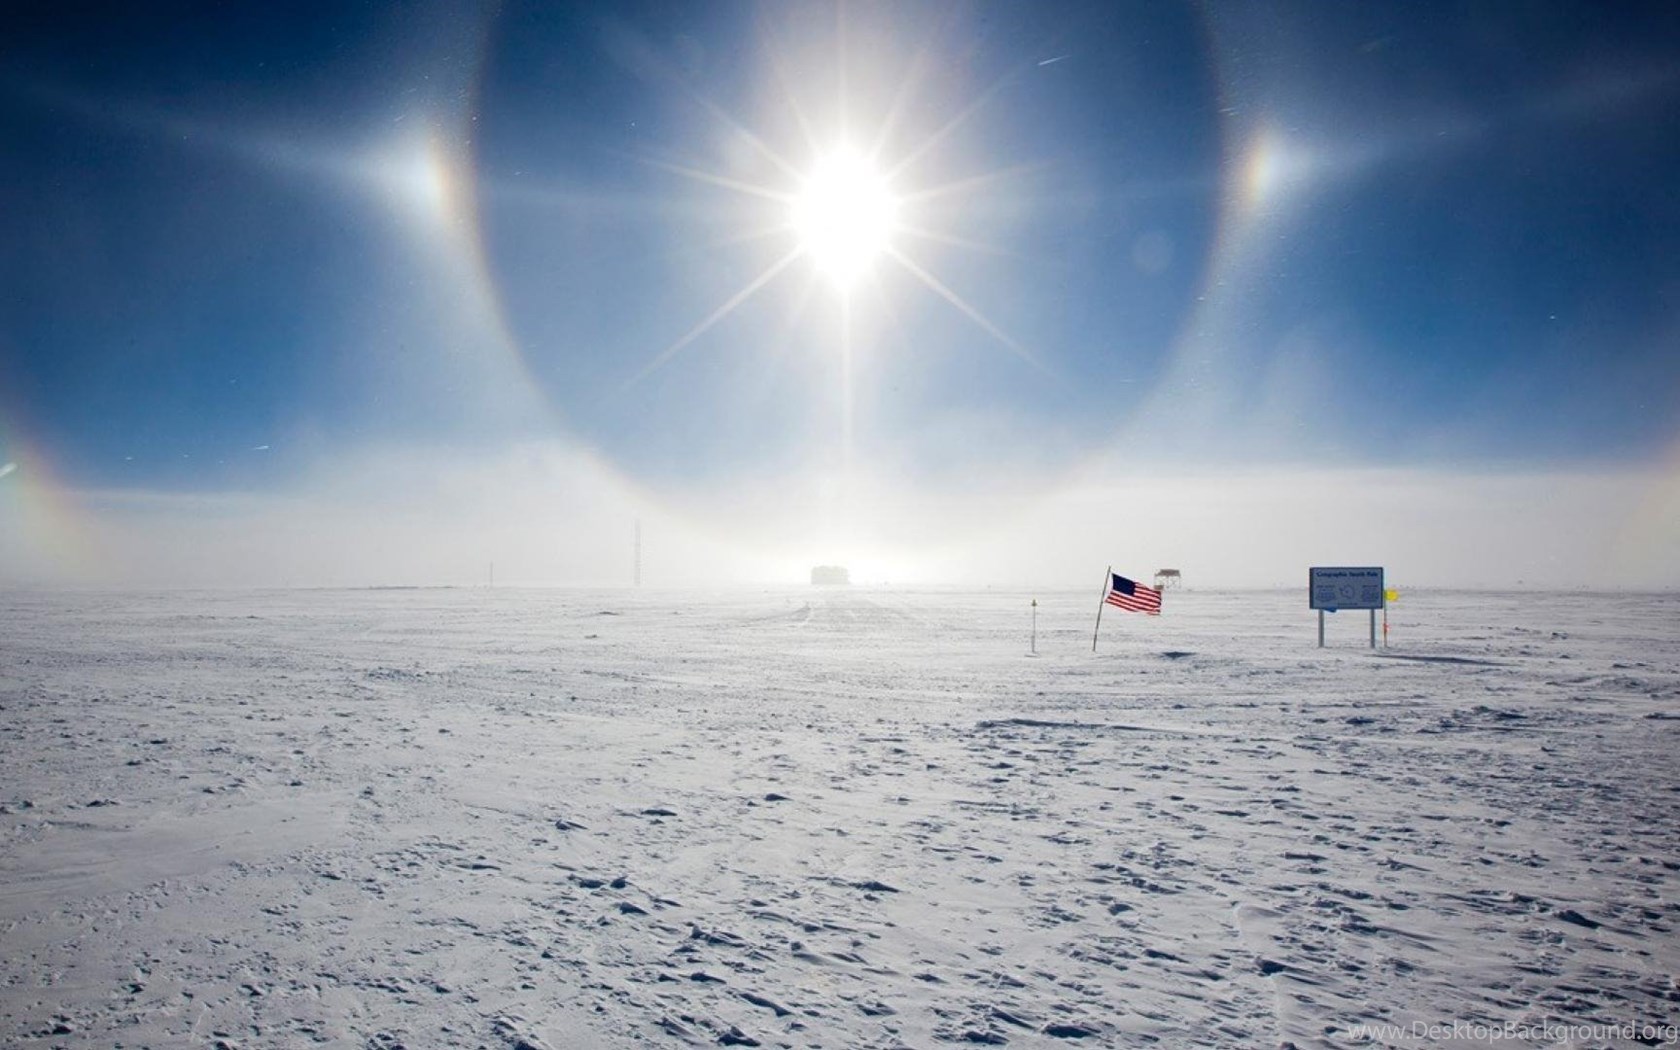 Южный полюс день и ночь. Южный полюс Антарктида. Гало в Антарктиде. Солнечное гало в Антарктиде. Эффект гало Луна.